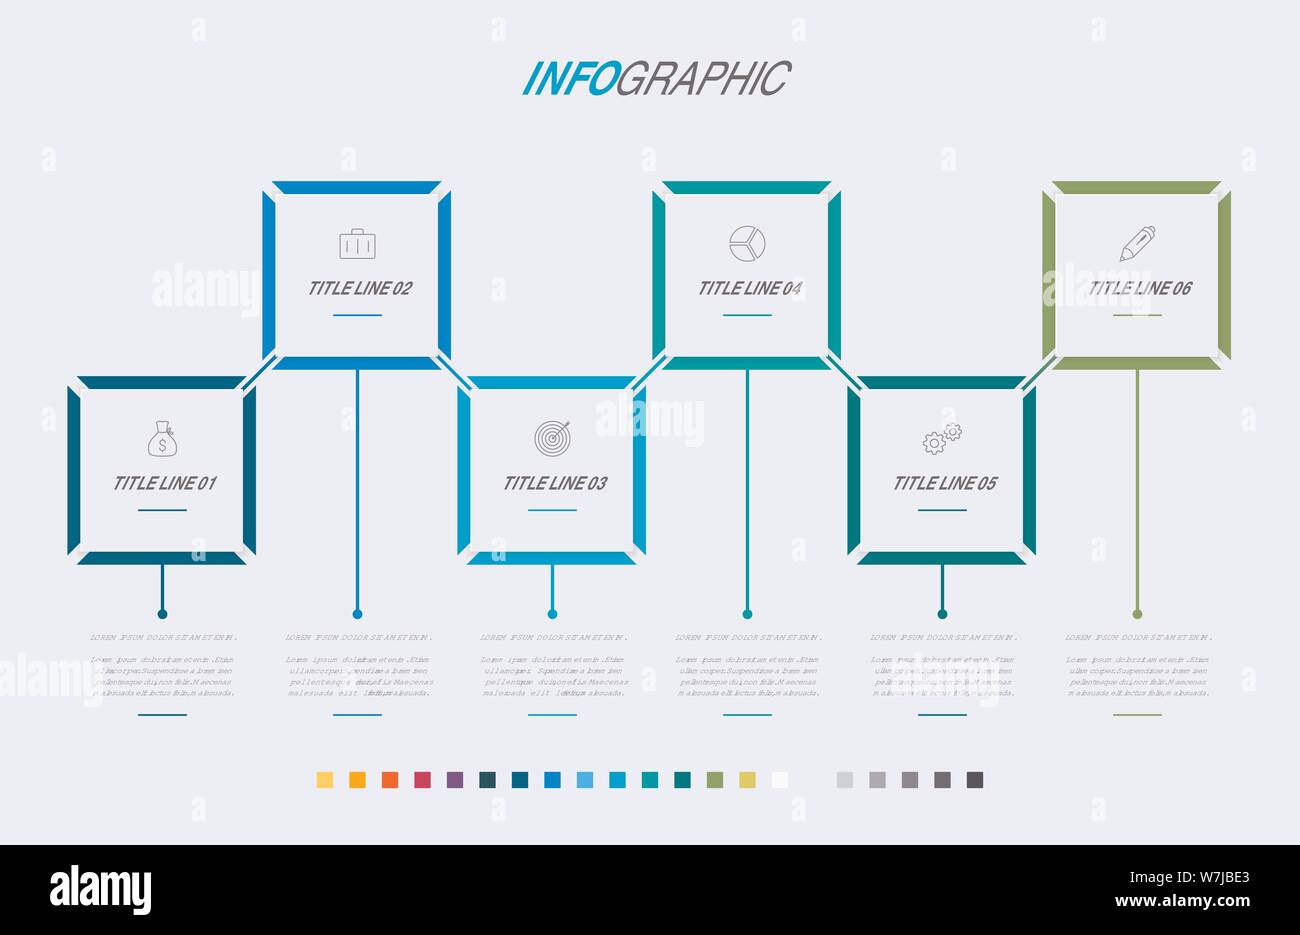 Modello infografico. 6 fasi di design arrotondato con bellissimi colori. Vettore di elementi di sequenza temporale per le presentazioni. Illustrazione Vettoriale